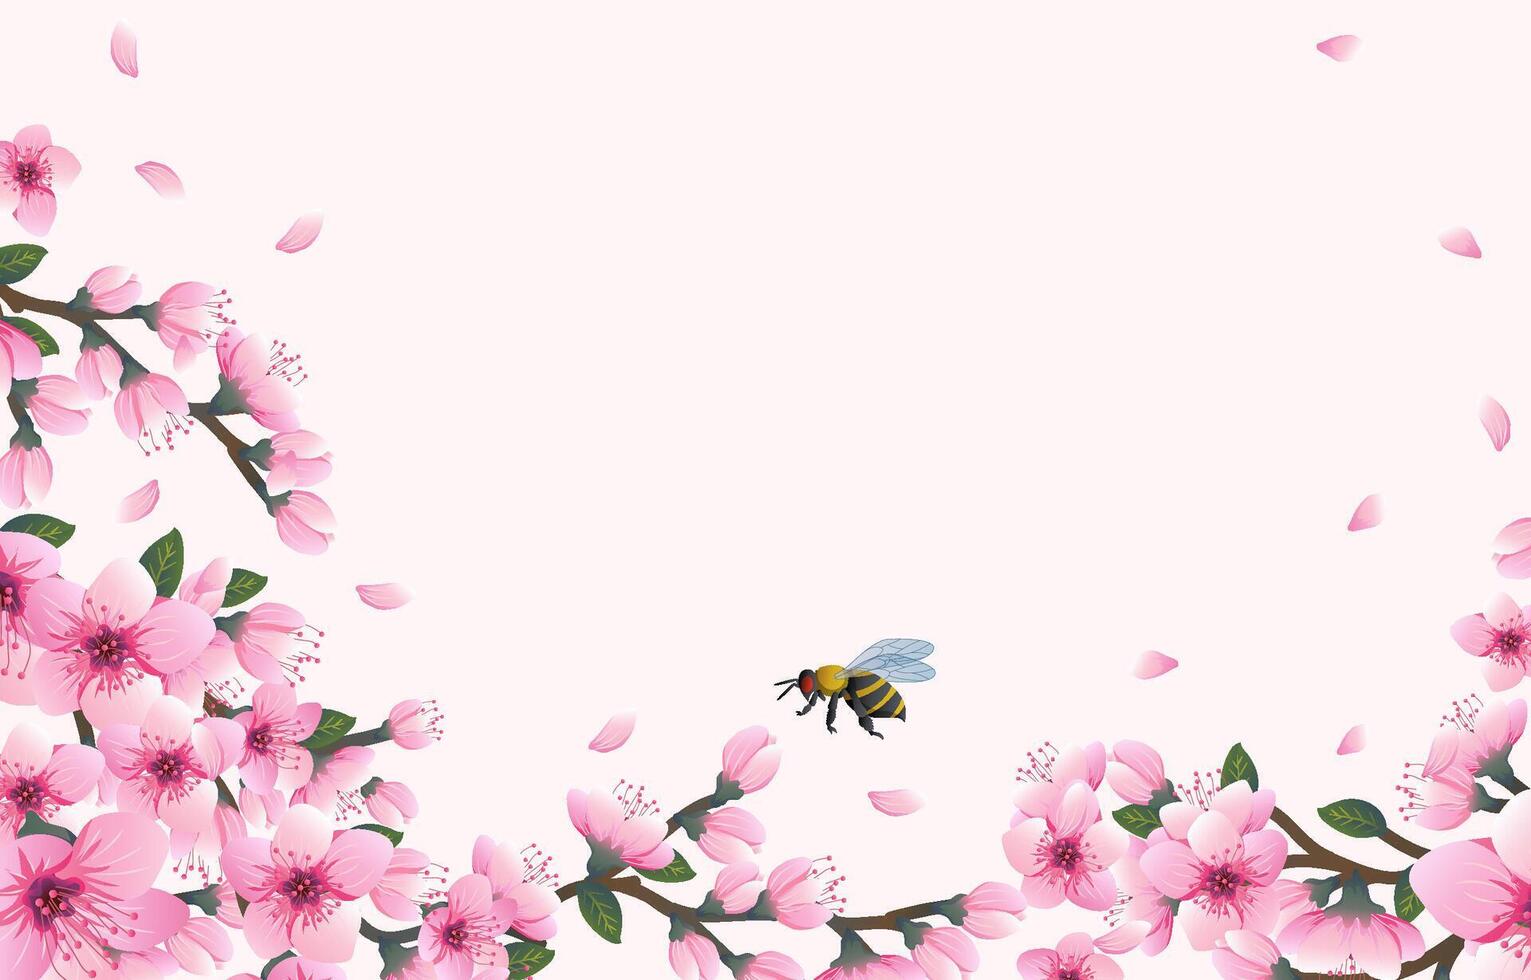 Hallo voorjaar achtergrond met vrolijk bloesem bloemen vector